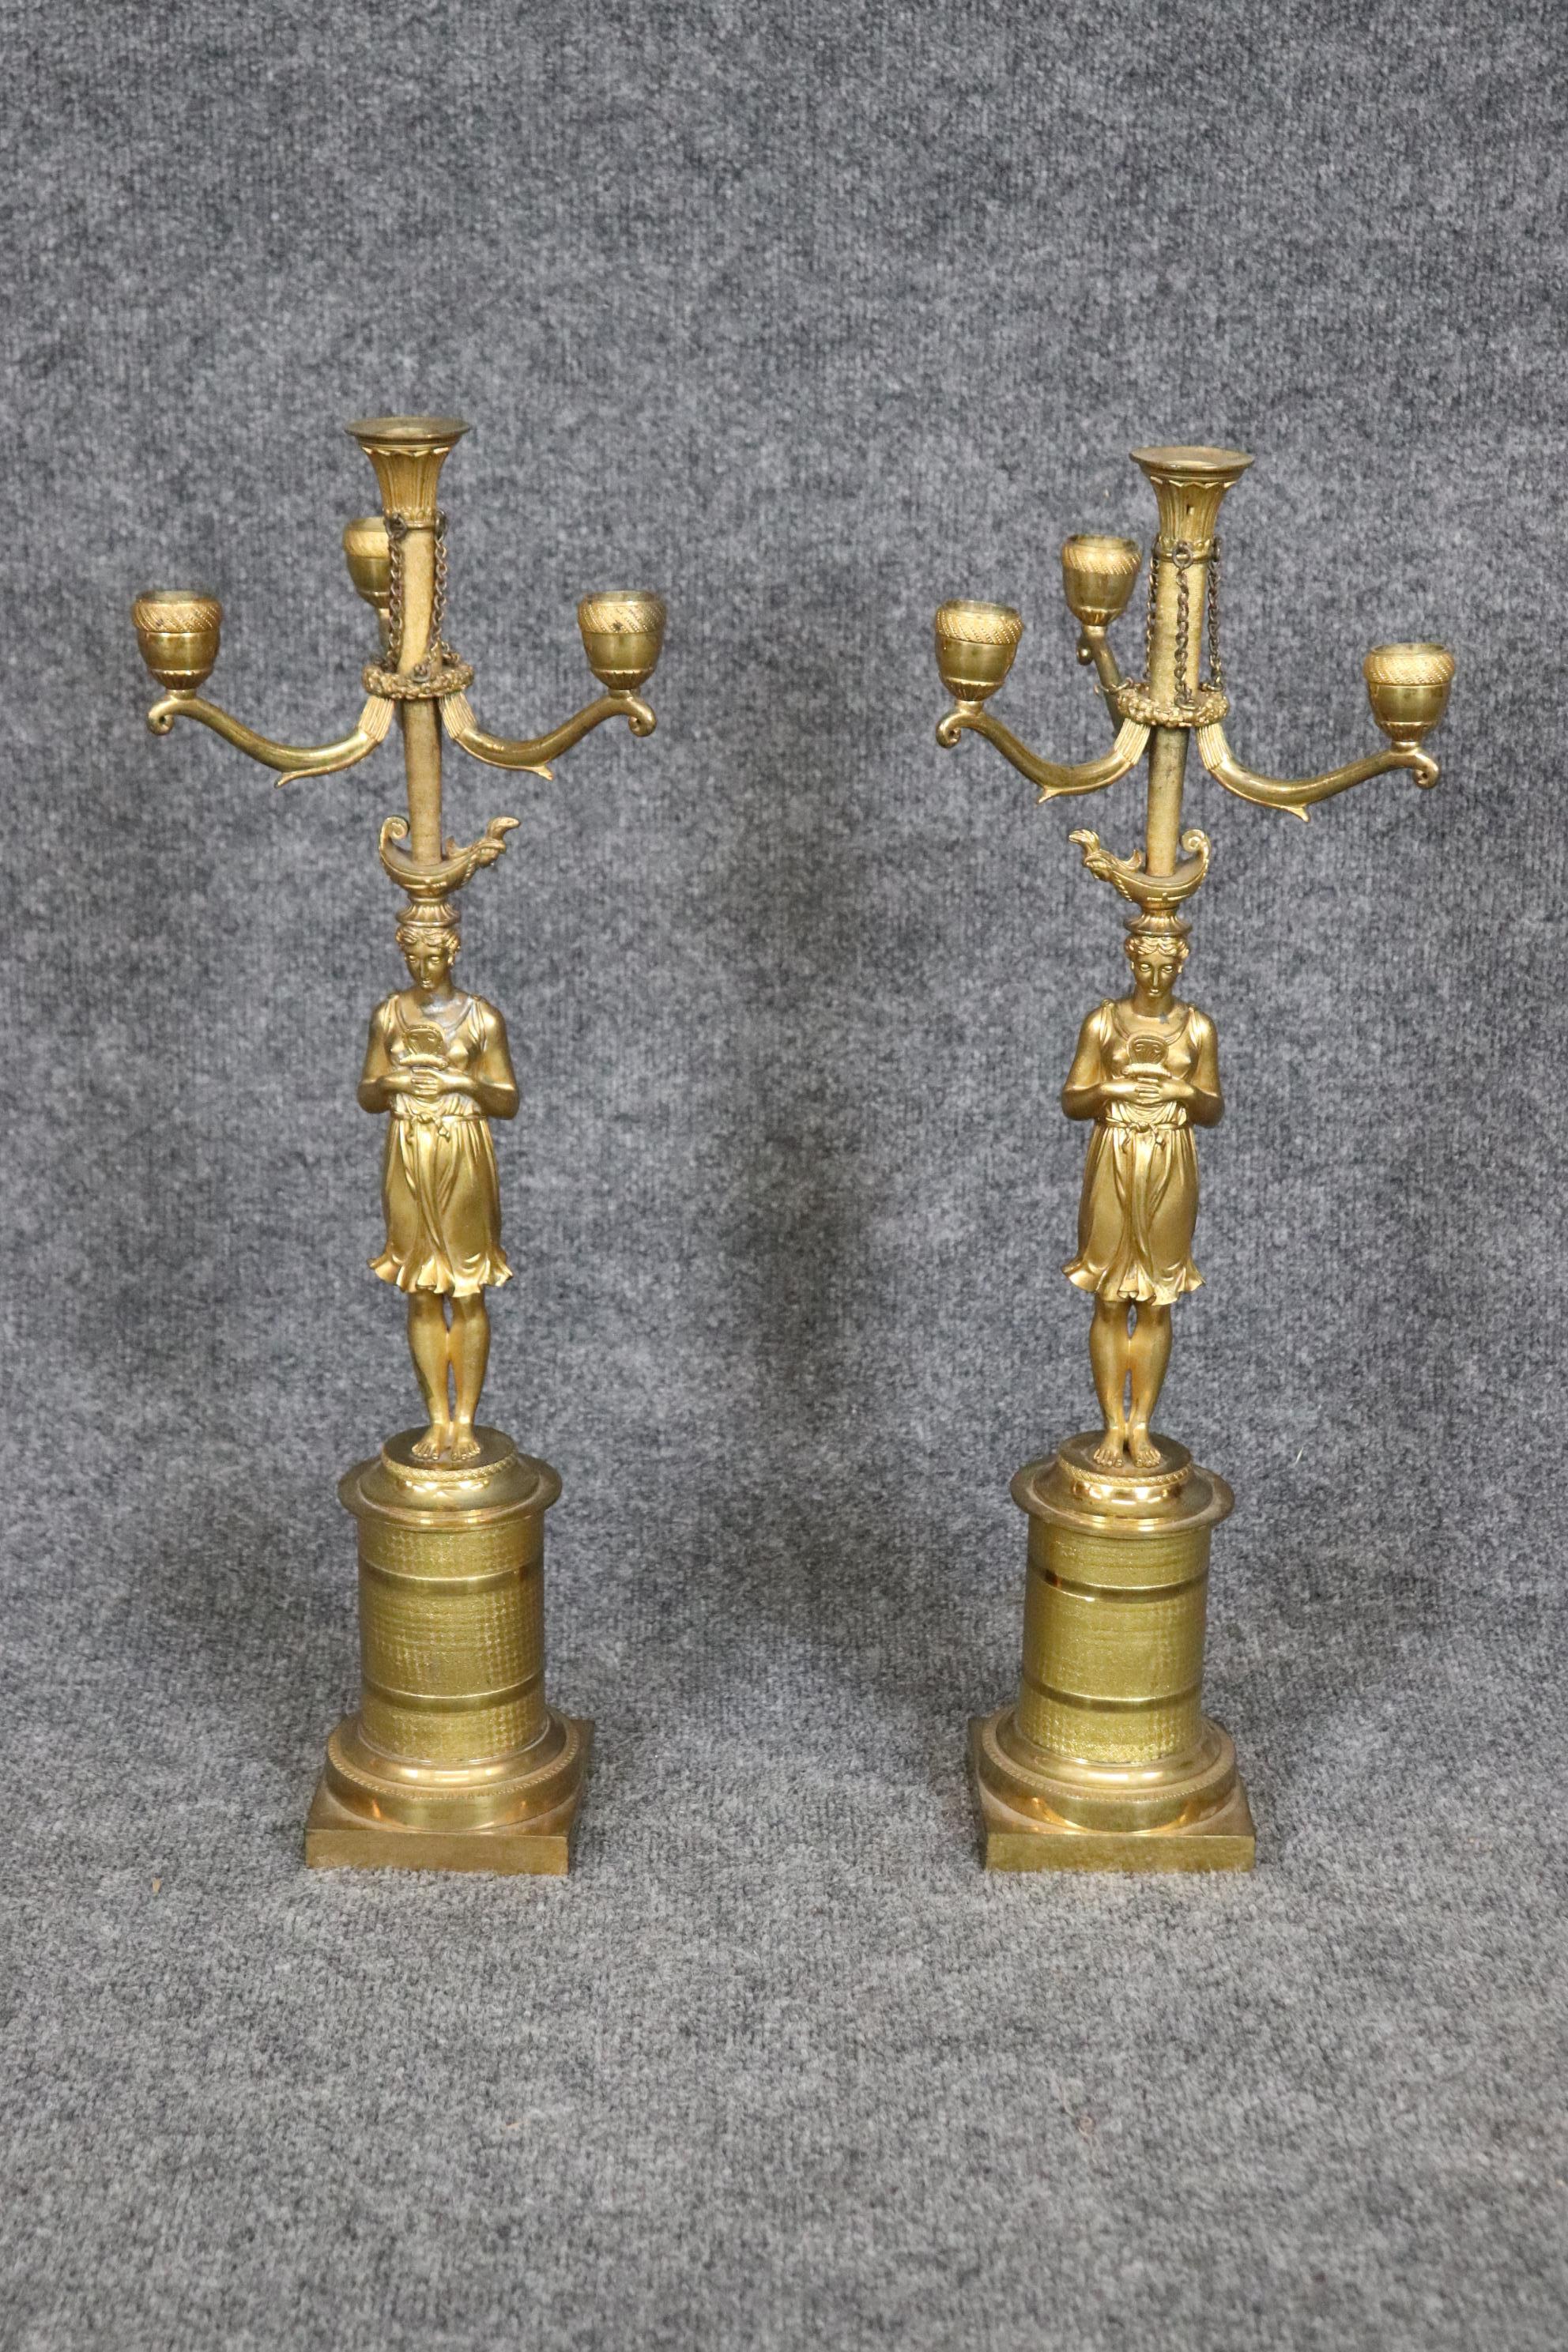 Dies ist ein atemberaubendes Paar aus heller Bronze mit fachmännisch gegossenen lebensechten figuralen Damen, die die Kerzenhalteroberteile halten. Diese können für die Beleuchtung verkabelt und mit Jalousien versehen werden.  Maße: 22 hoch x 7,25